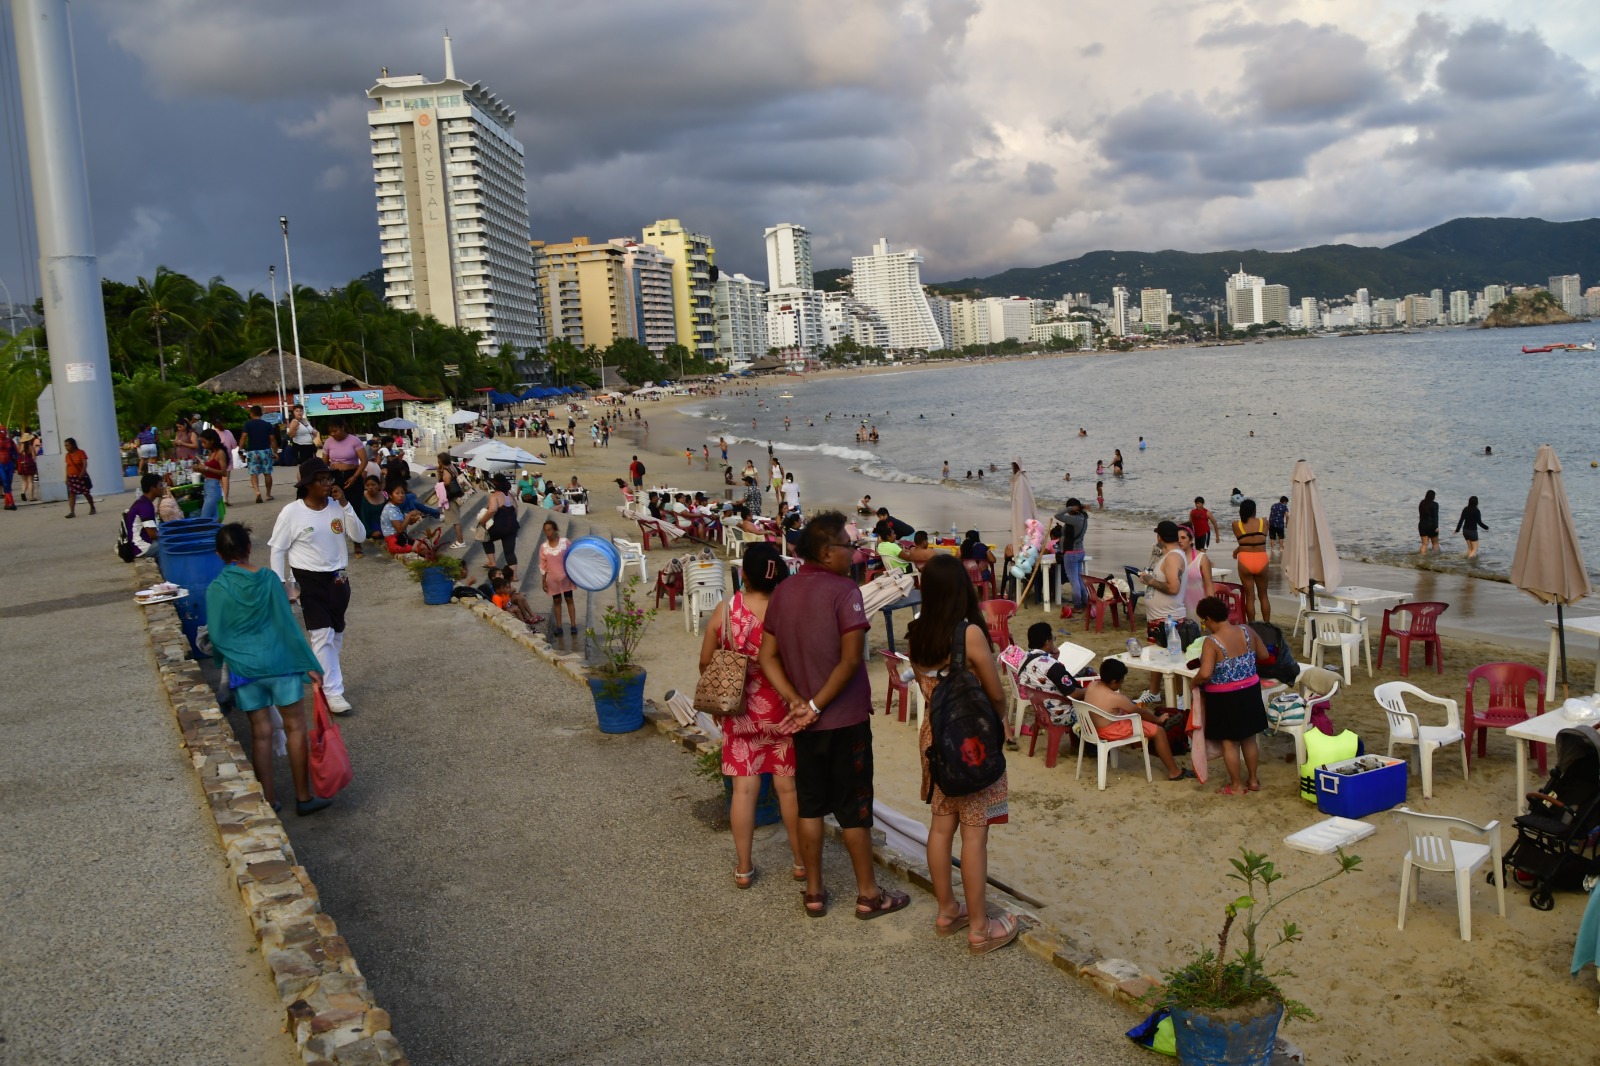 Ya opera el 74% de hoteles en Acapulco tras paso de Otis